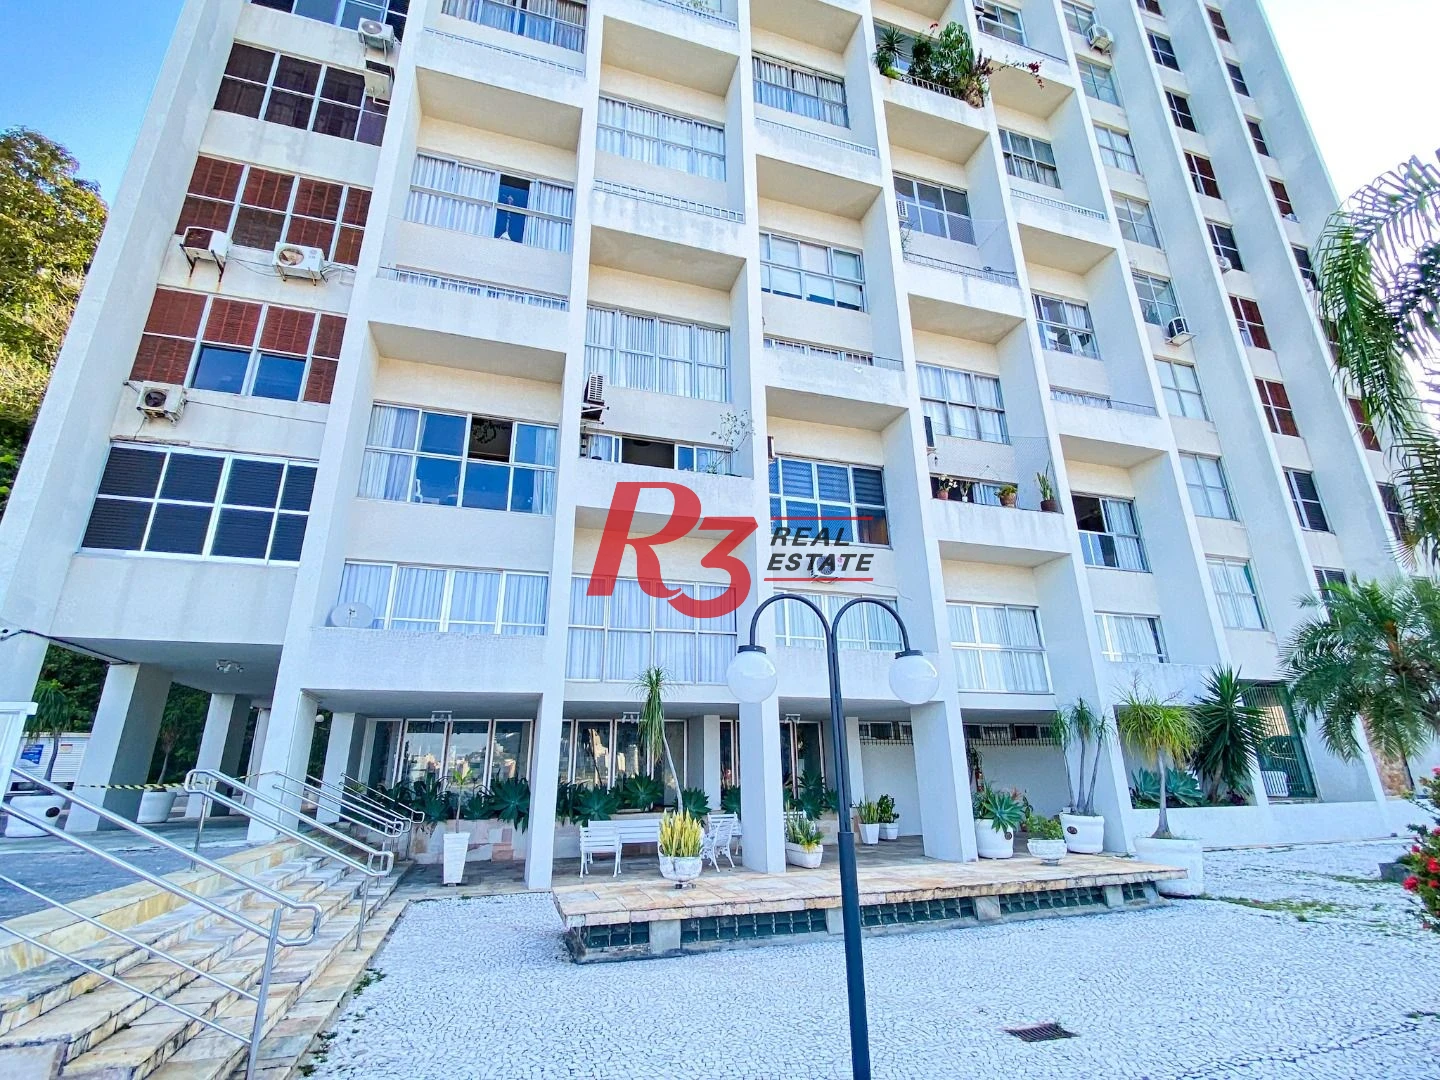 Maravilhoso Apartamento a venda com aproximadamente 225 m² | 3 dorms | 1 suíte | 2 vagas - São Vicente/SP